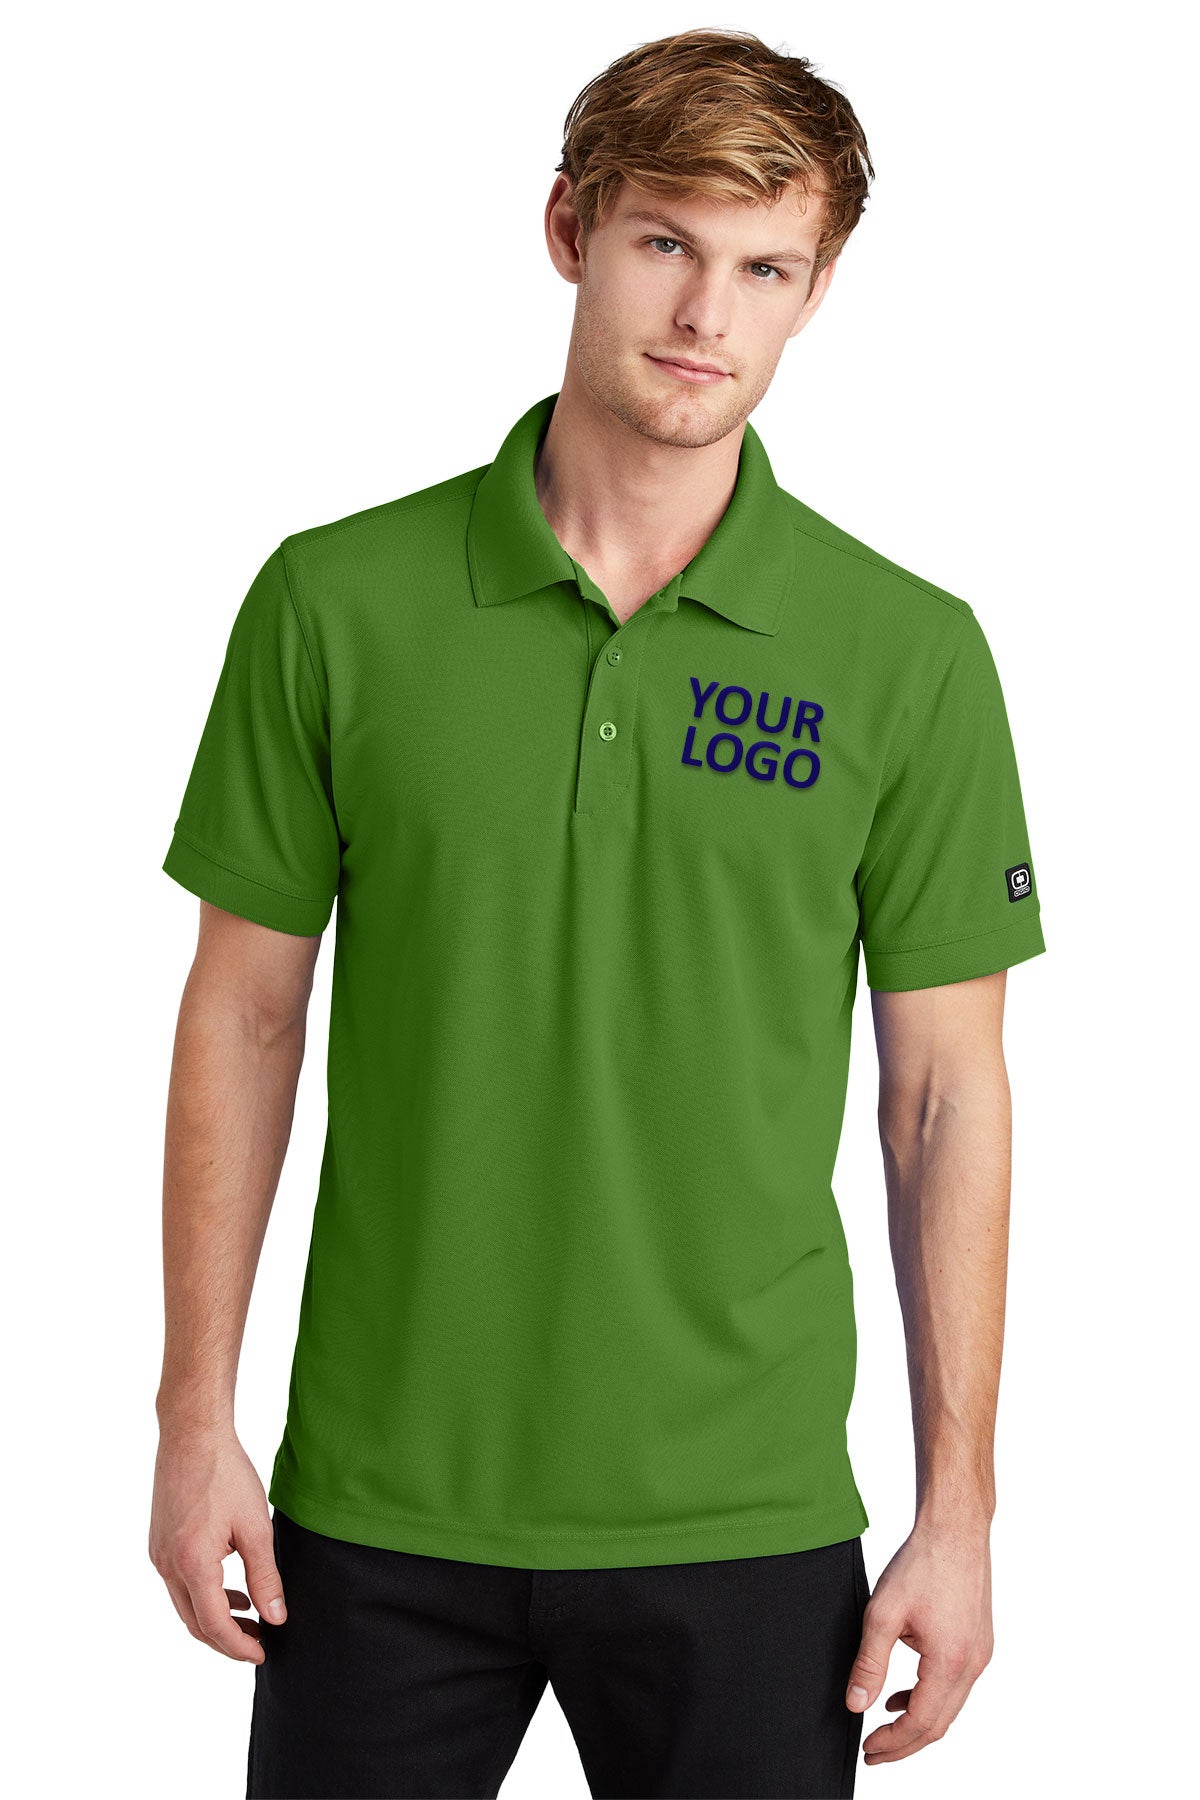 OGIO Gridiron Green OG101 polo shirts with custom logo